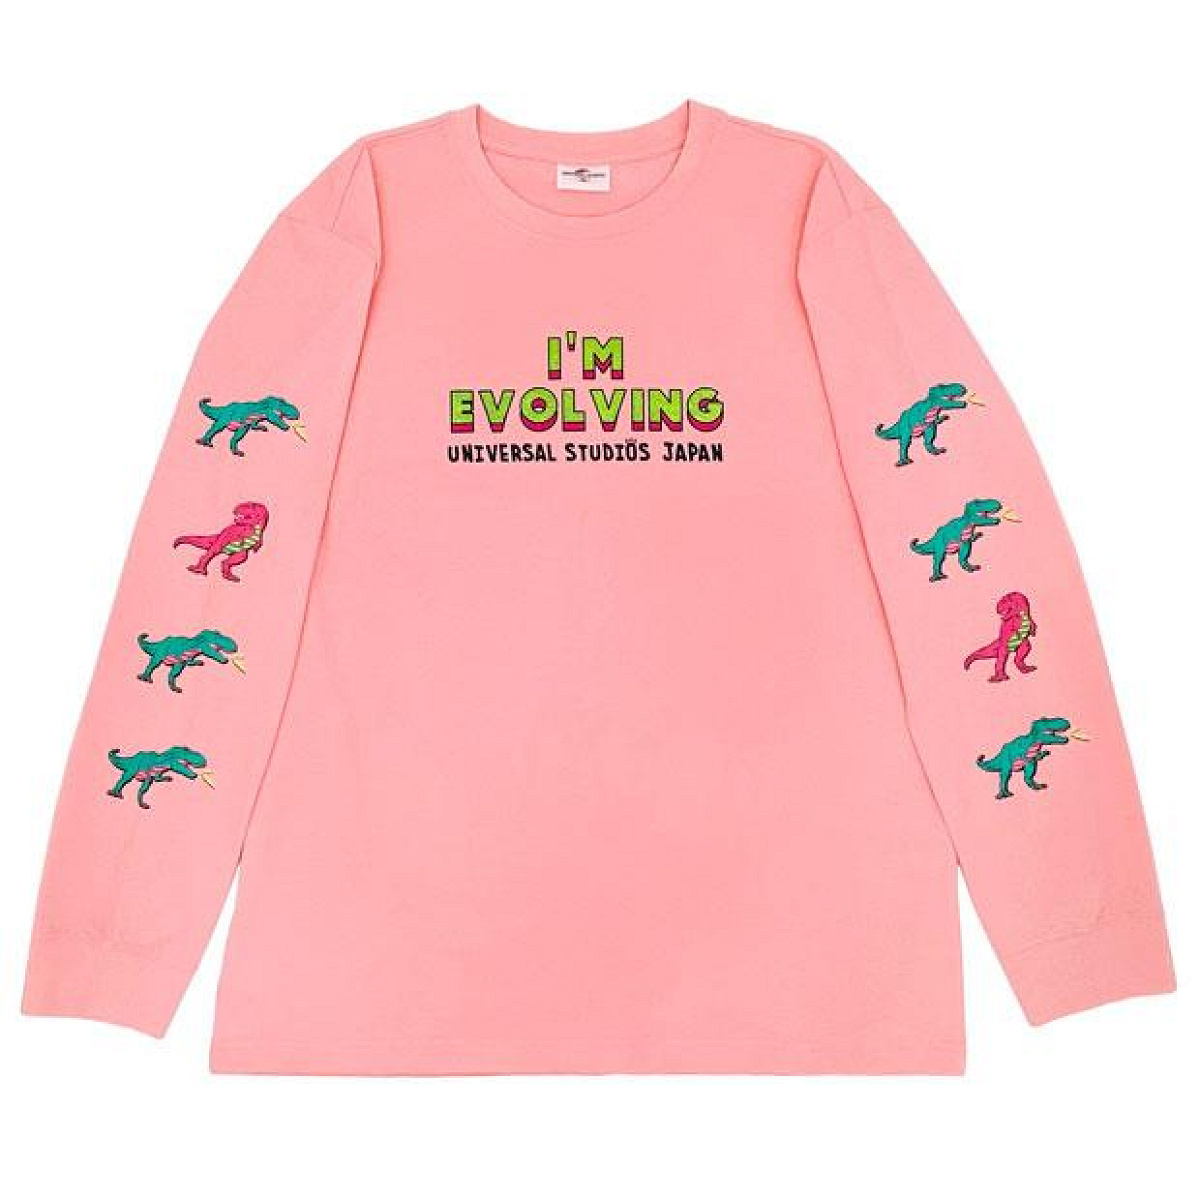 ユニバの新恐竜グッズ「ジュラシック・パーク  I’M EVOLVING」ロングスリーブTシャツ